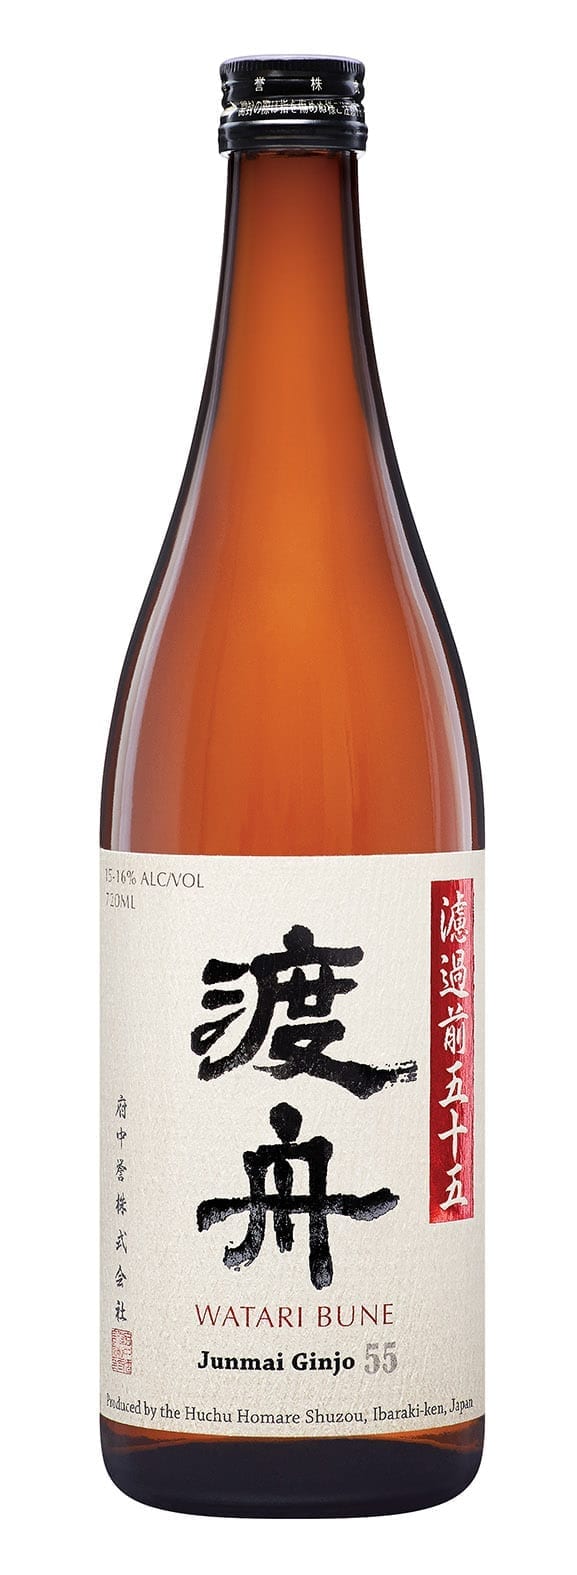 Watari Bune sake bottle